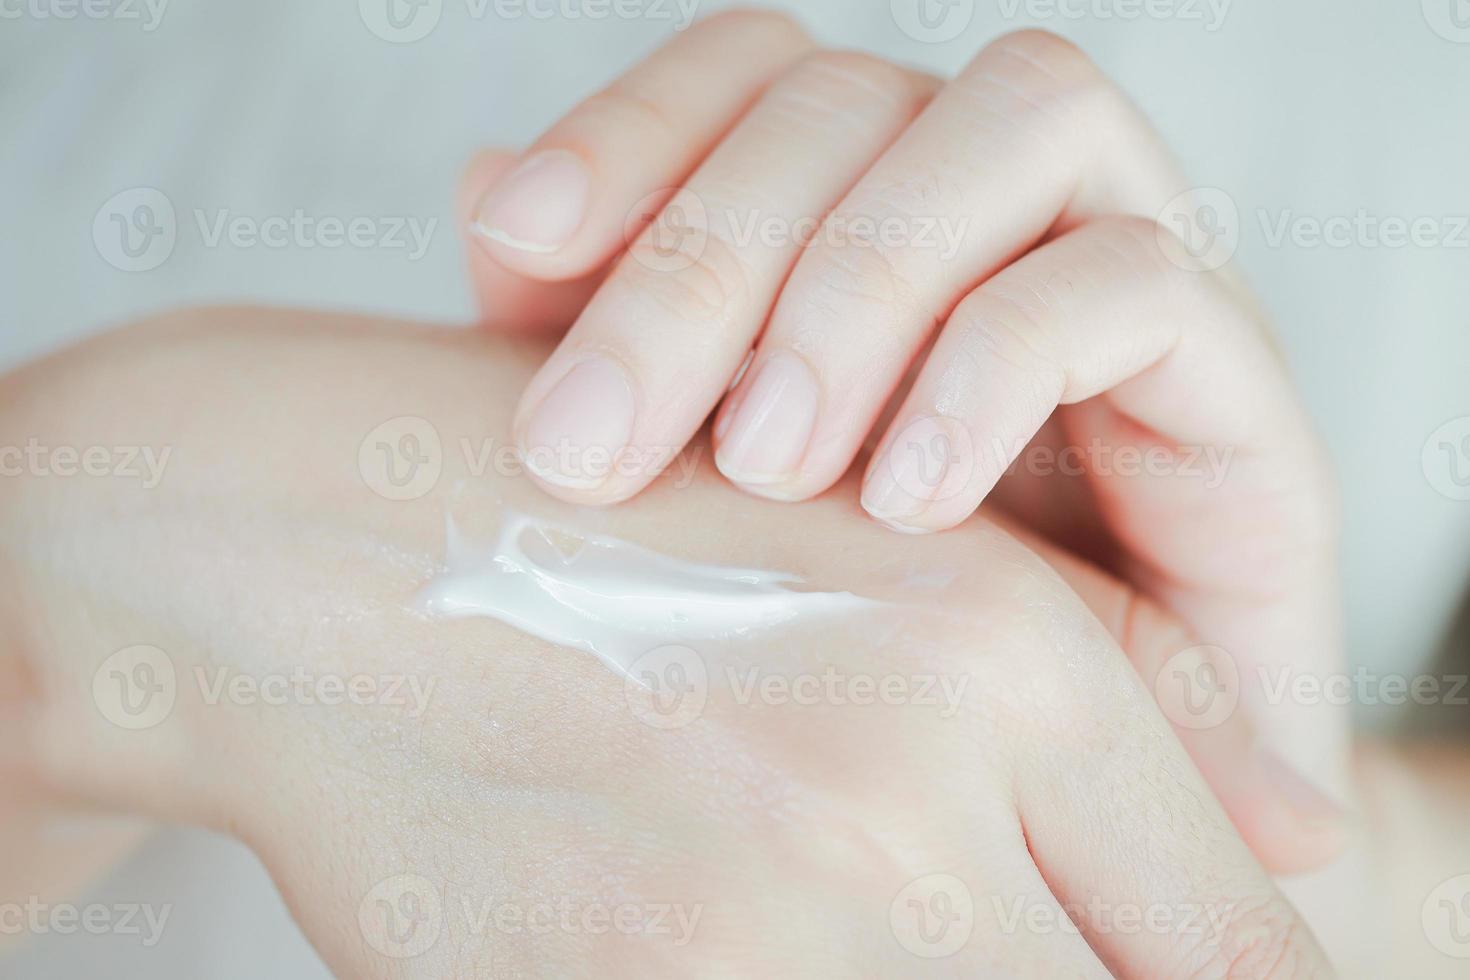 Hautcreme auf der Hand der Frau, um der Haut Feuchtigkeit zuzuführen. konzept der gesundheitspflege der hand. foto